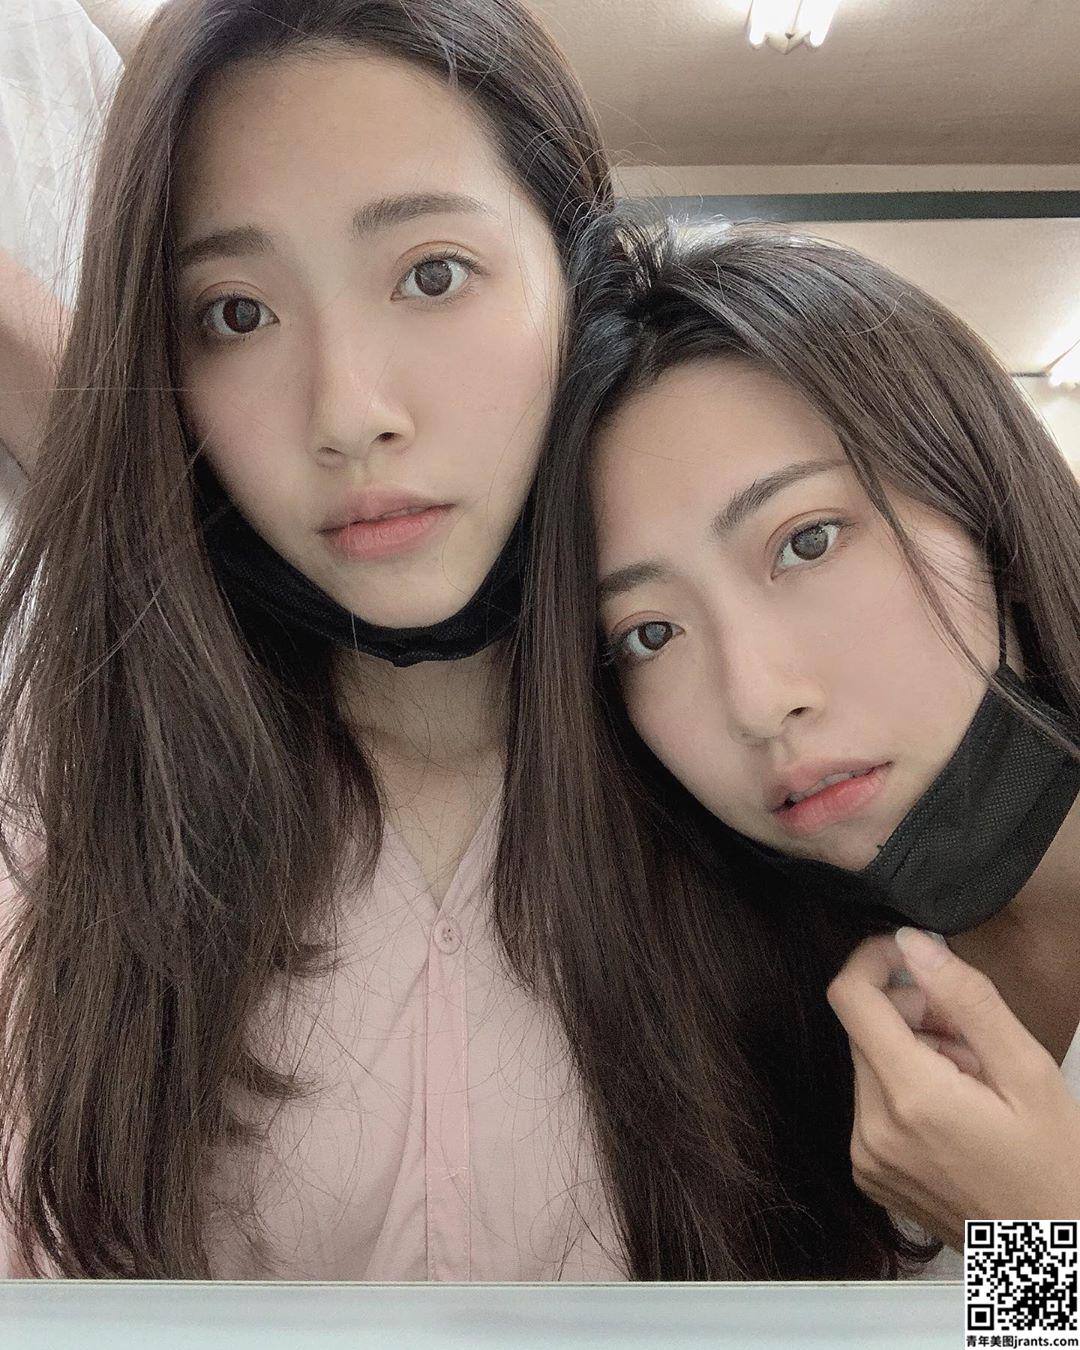 甜美「双胞胎」Twins shin谷谷 看了有恋爱的好滋味 (20P)